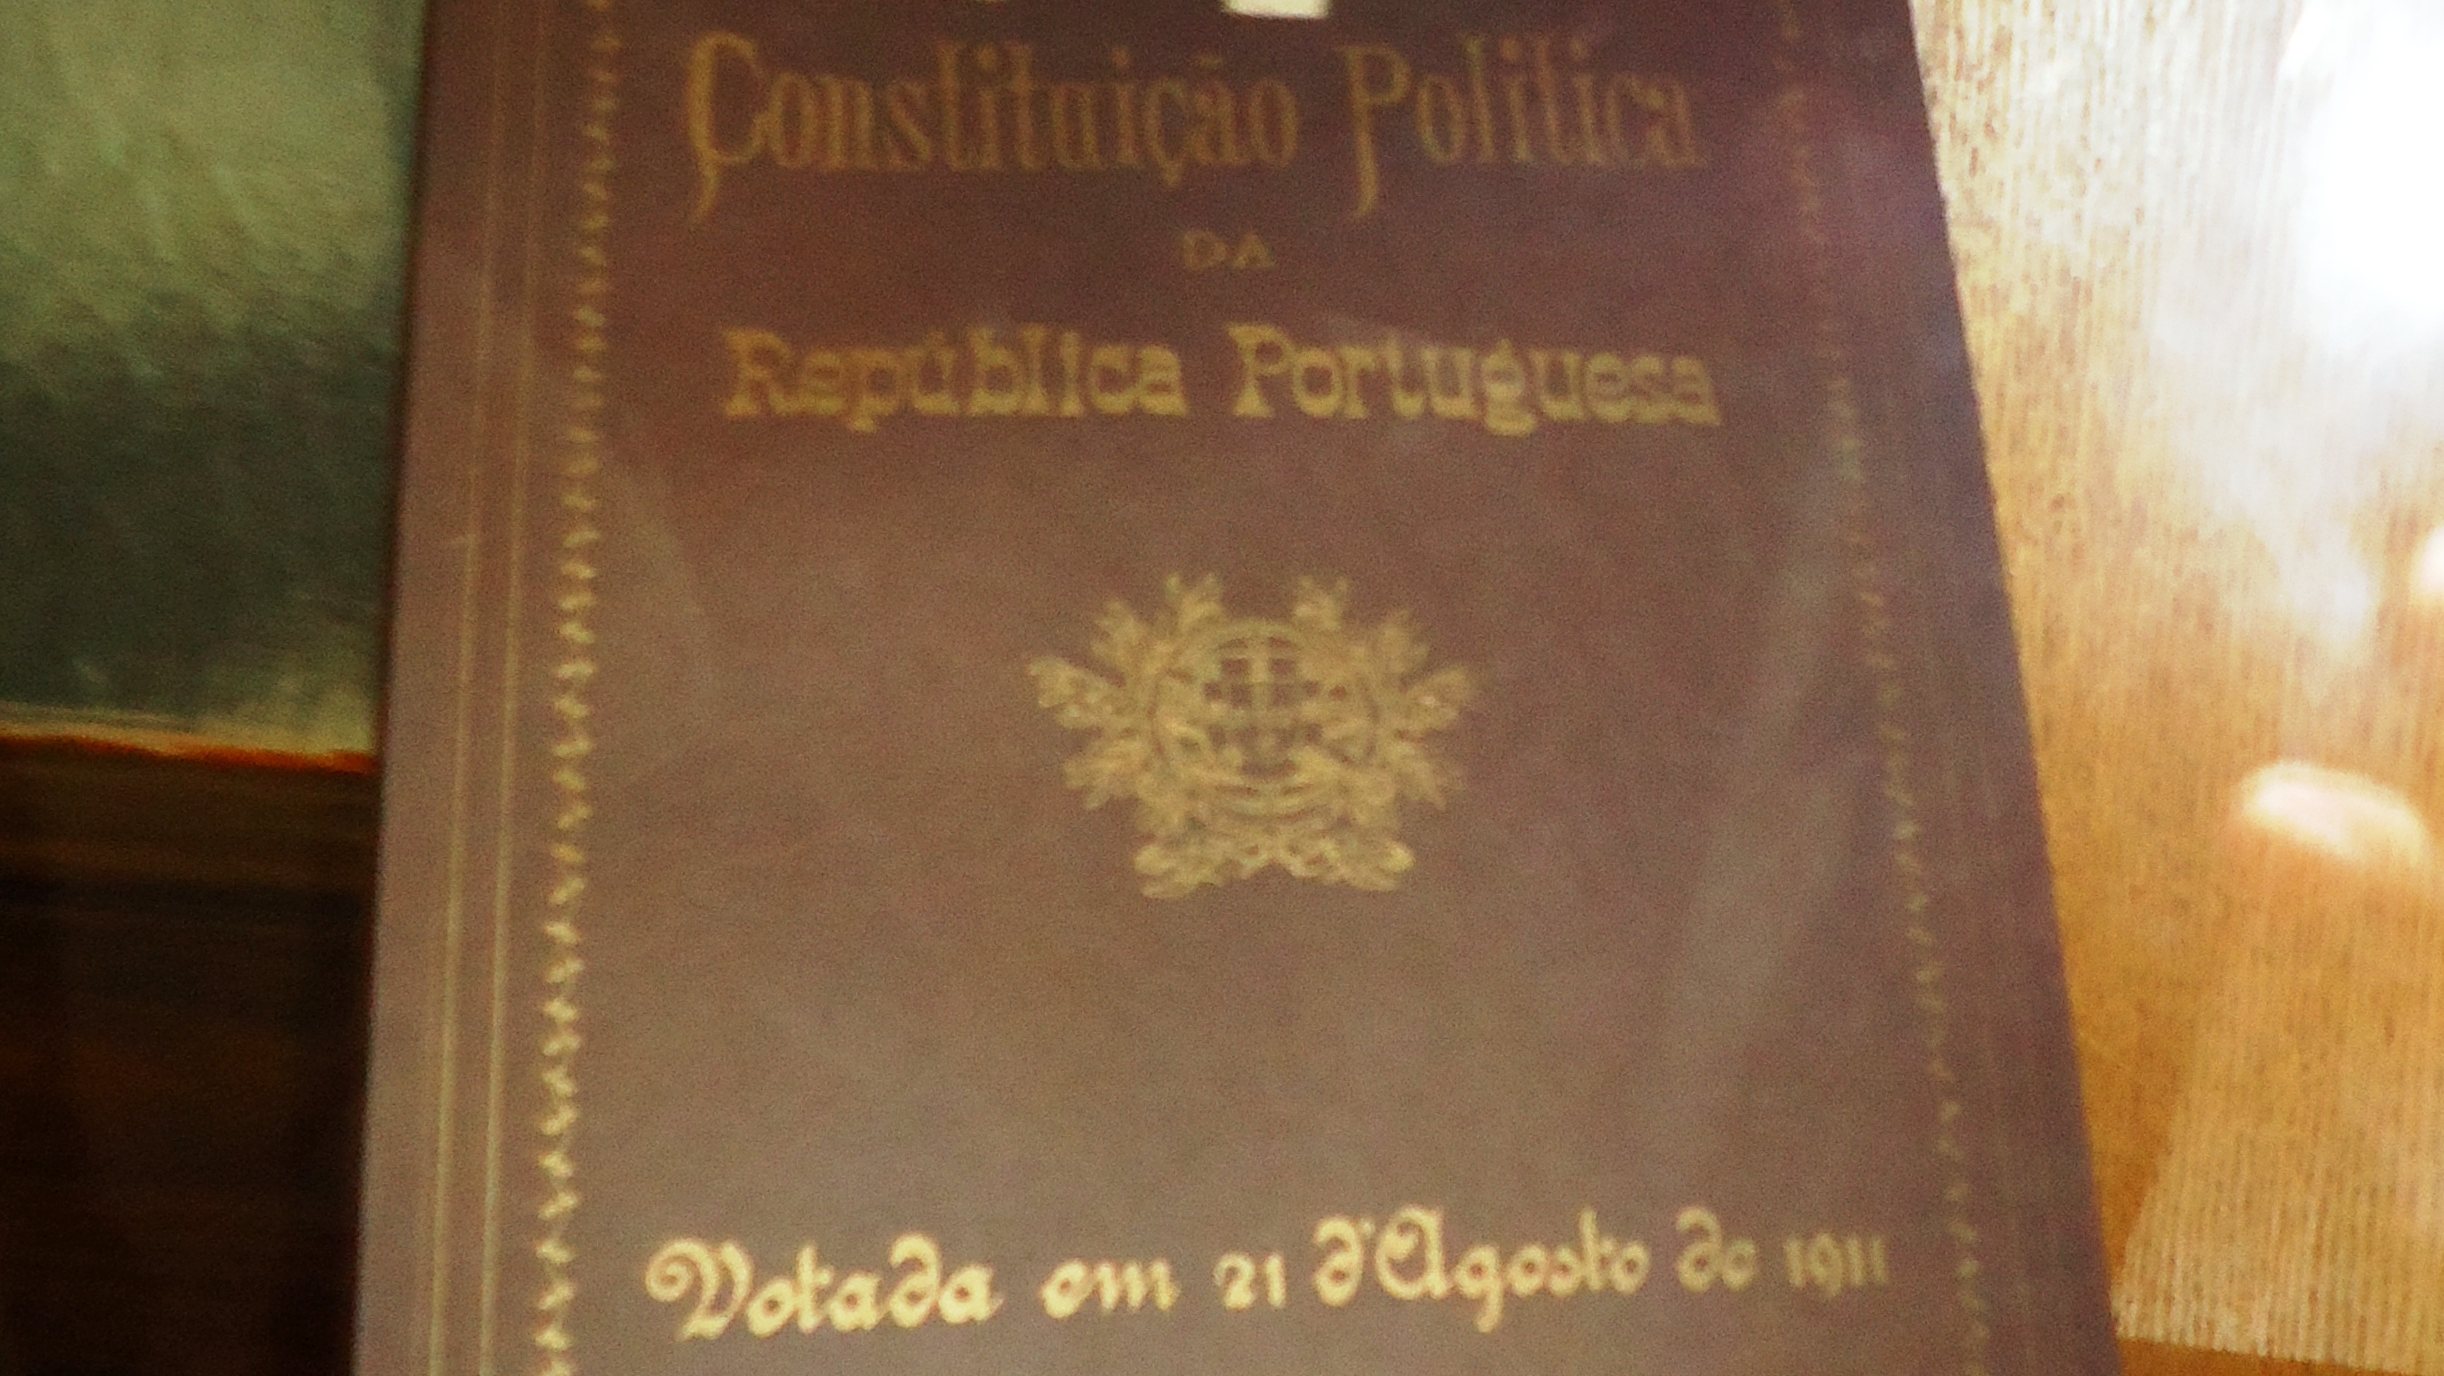 Com 29 páginas e 87 artigos, a Constituição de 1911 foi aprovada pela Assembleia Constituinte em 21 de agosto